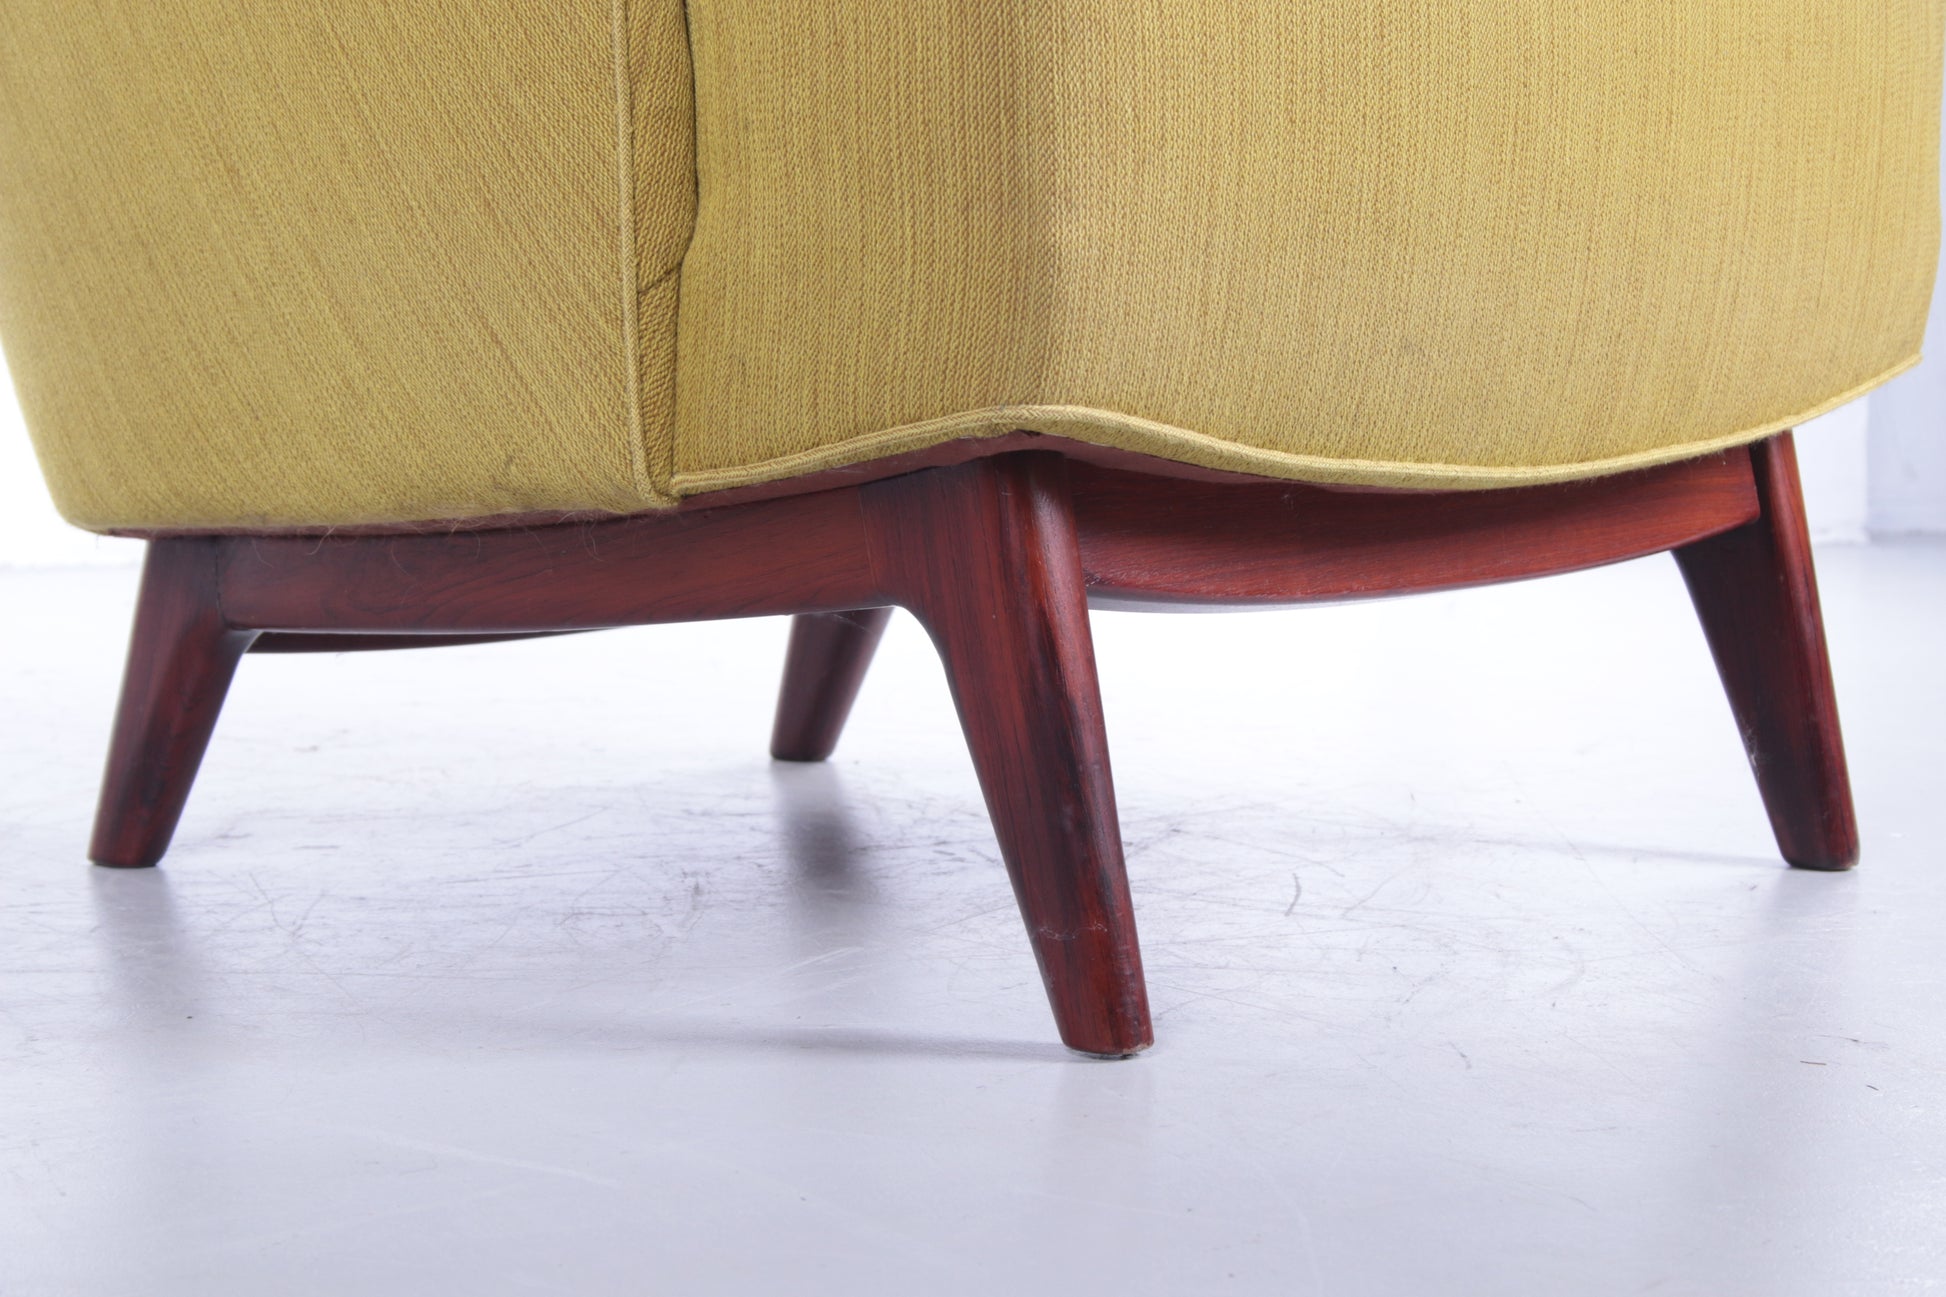 Deense fauteuil met pallisander houten onderstel mosgroendetail stoelpoten